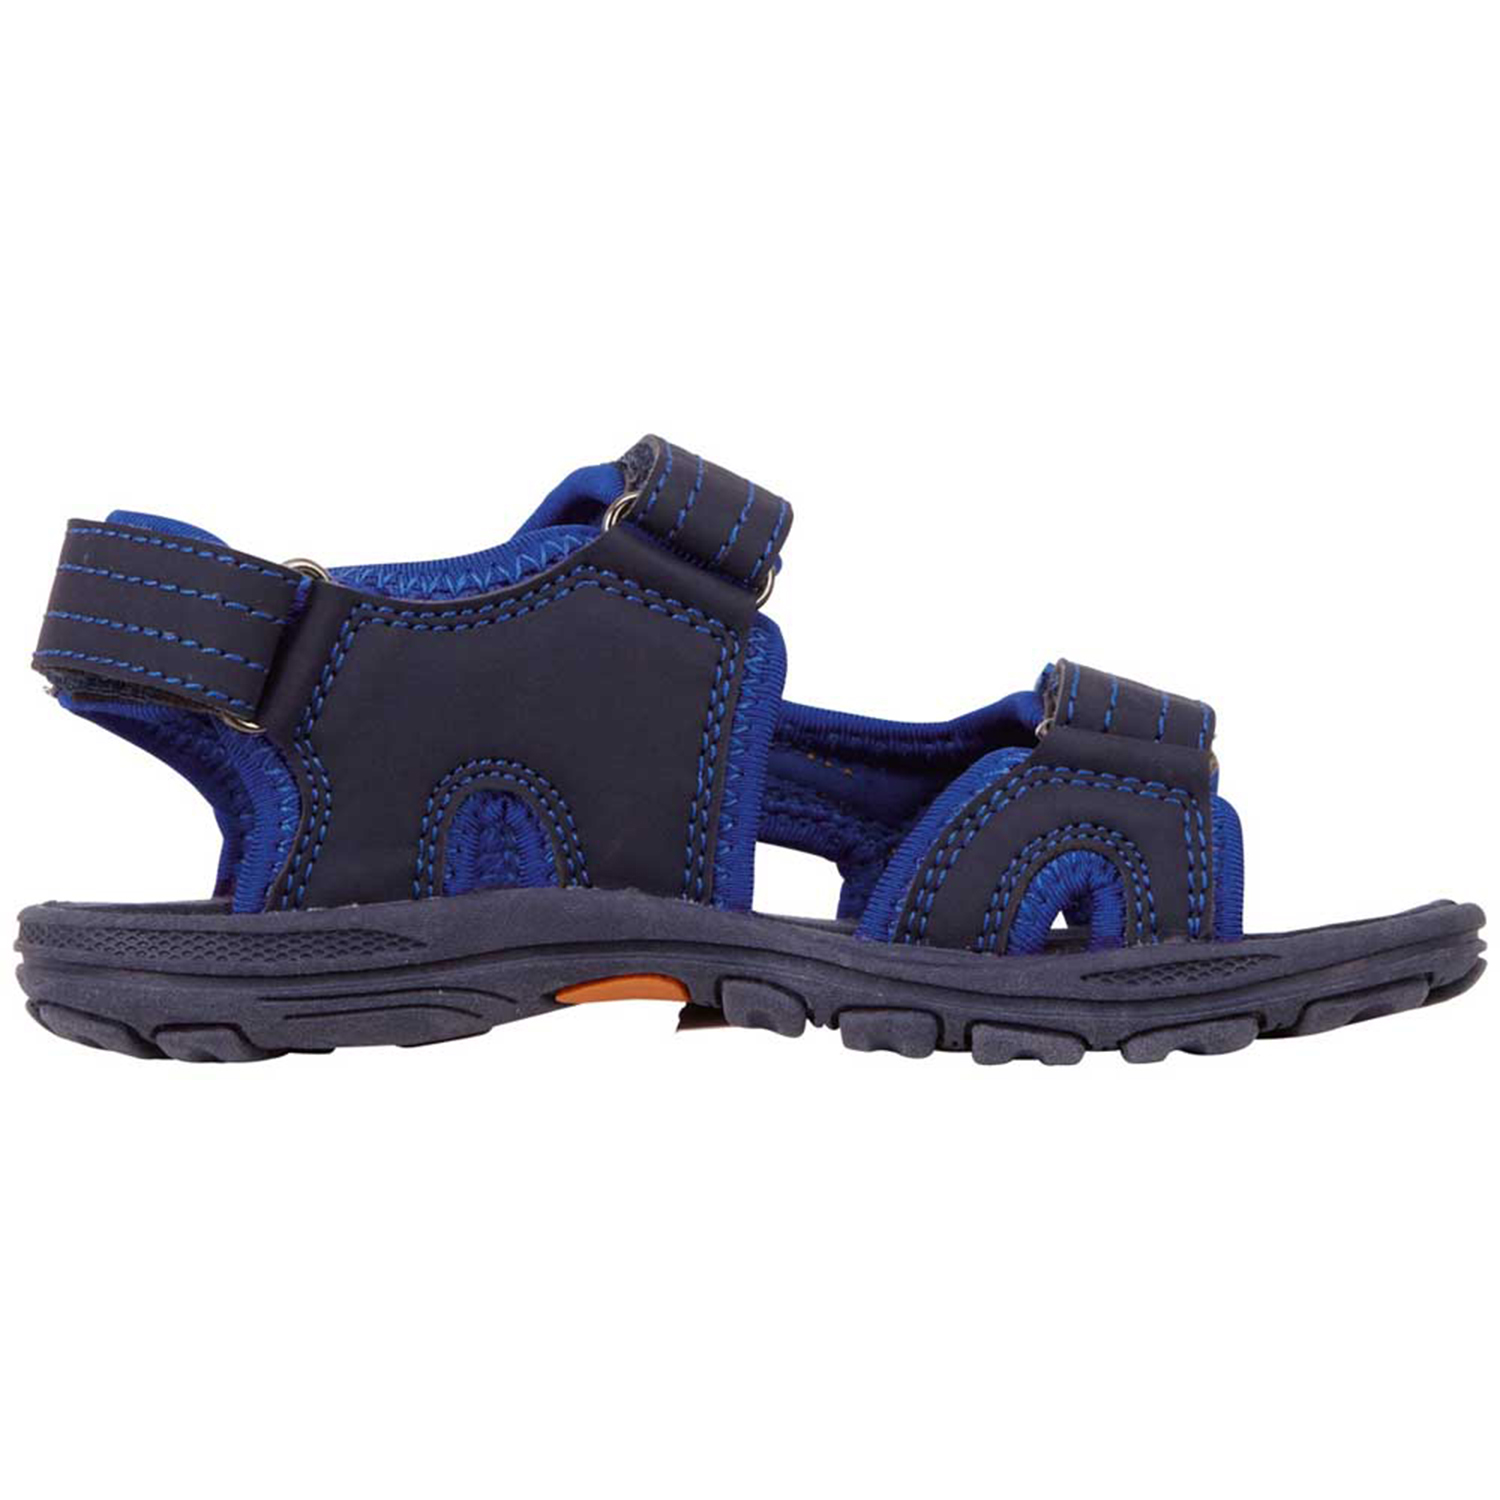 Kappa Unisex Kinder Sandale Schuhe 260373